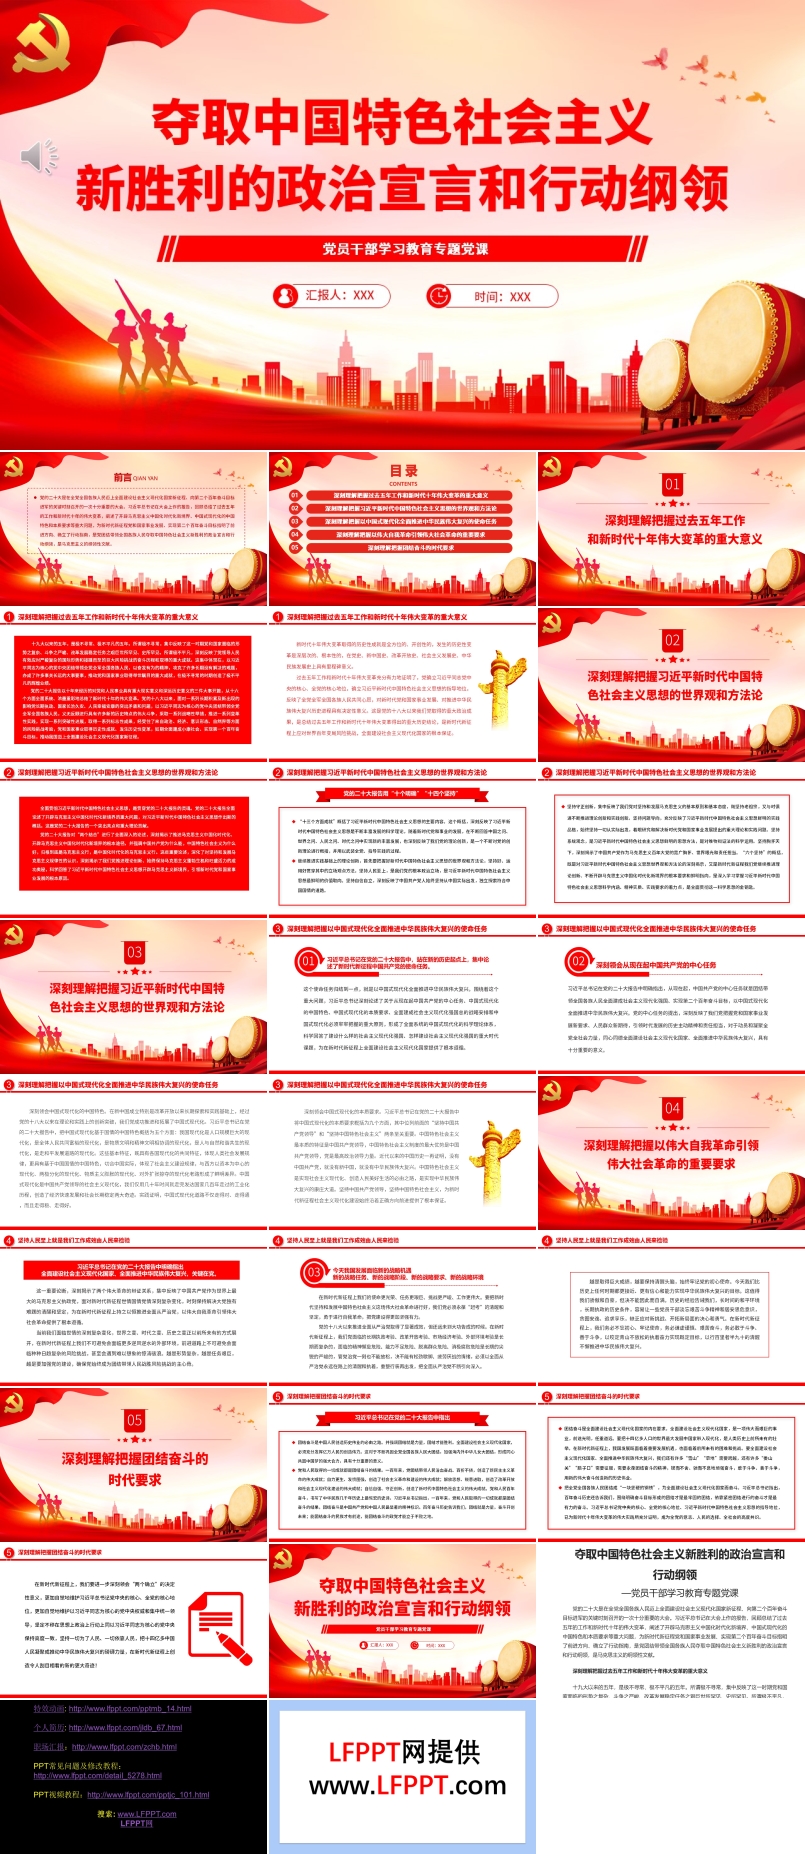 夺取中国特色社会主义新胜利的政治宣言和行动纲领PPT